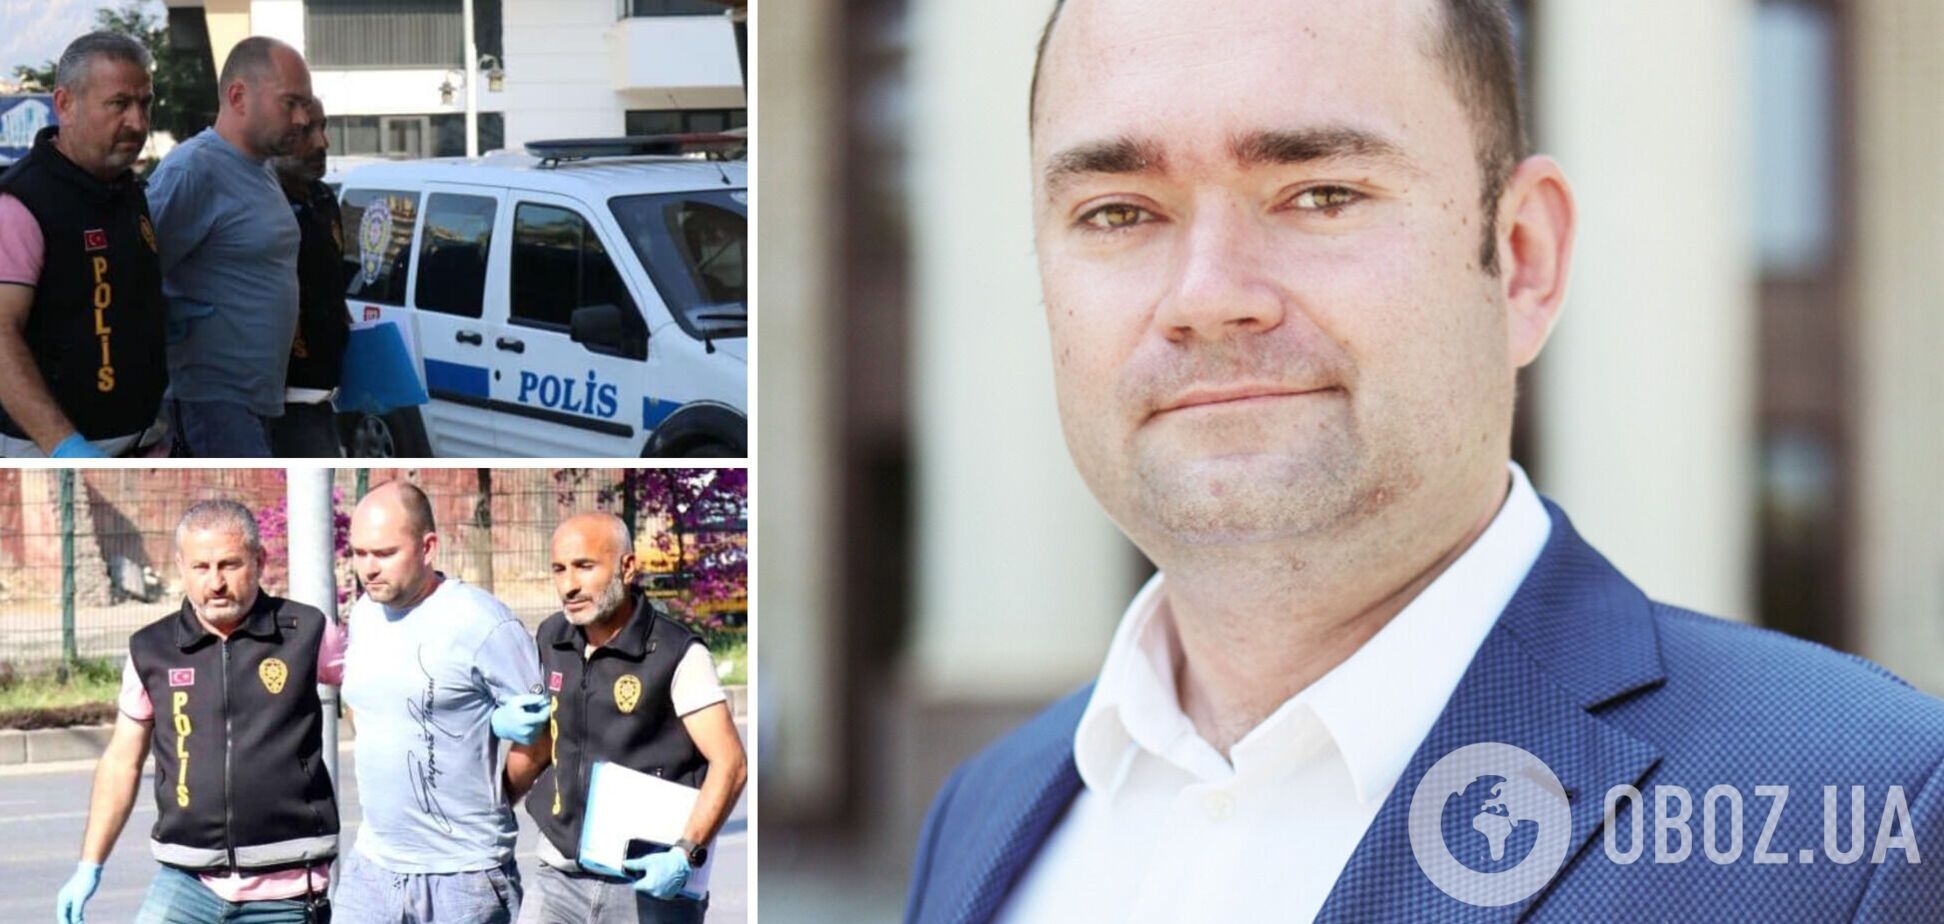 Проректор и экс-депутат: кто такой Алексей Навроцкий, обвиняемый в убийстве собственных детей в Турции